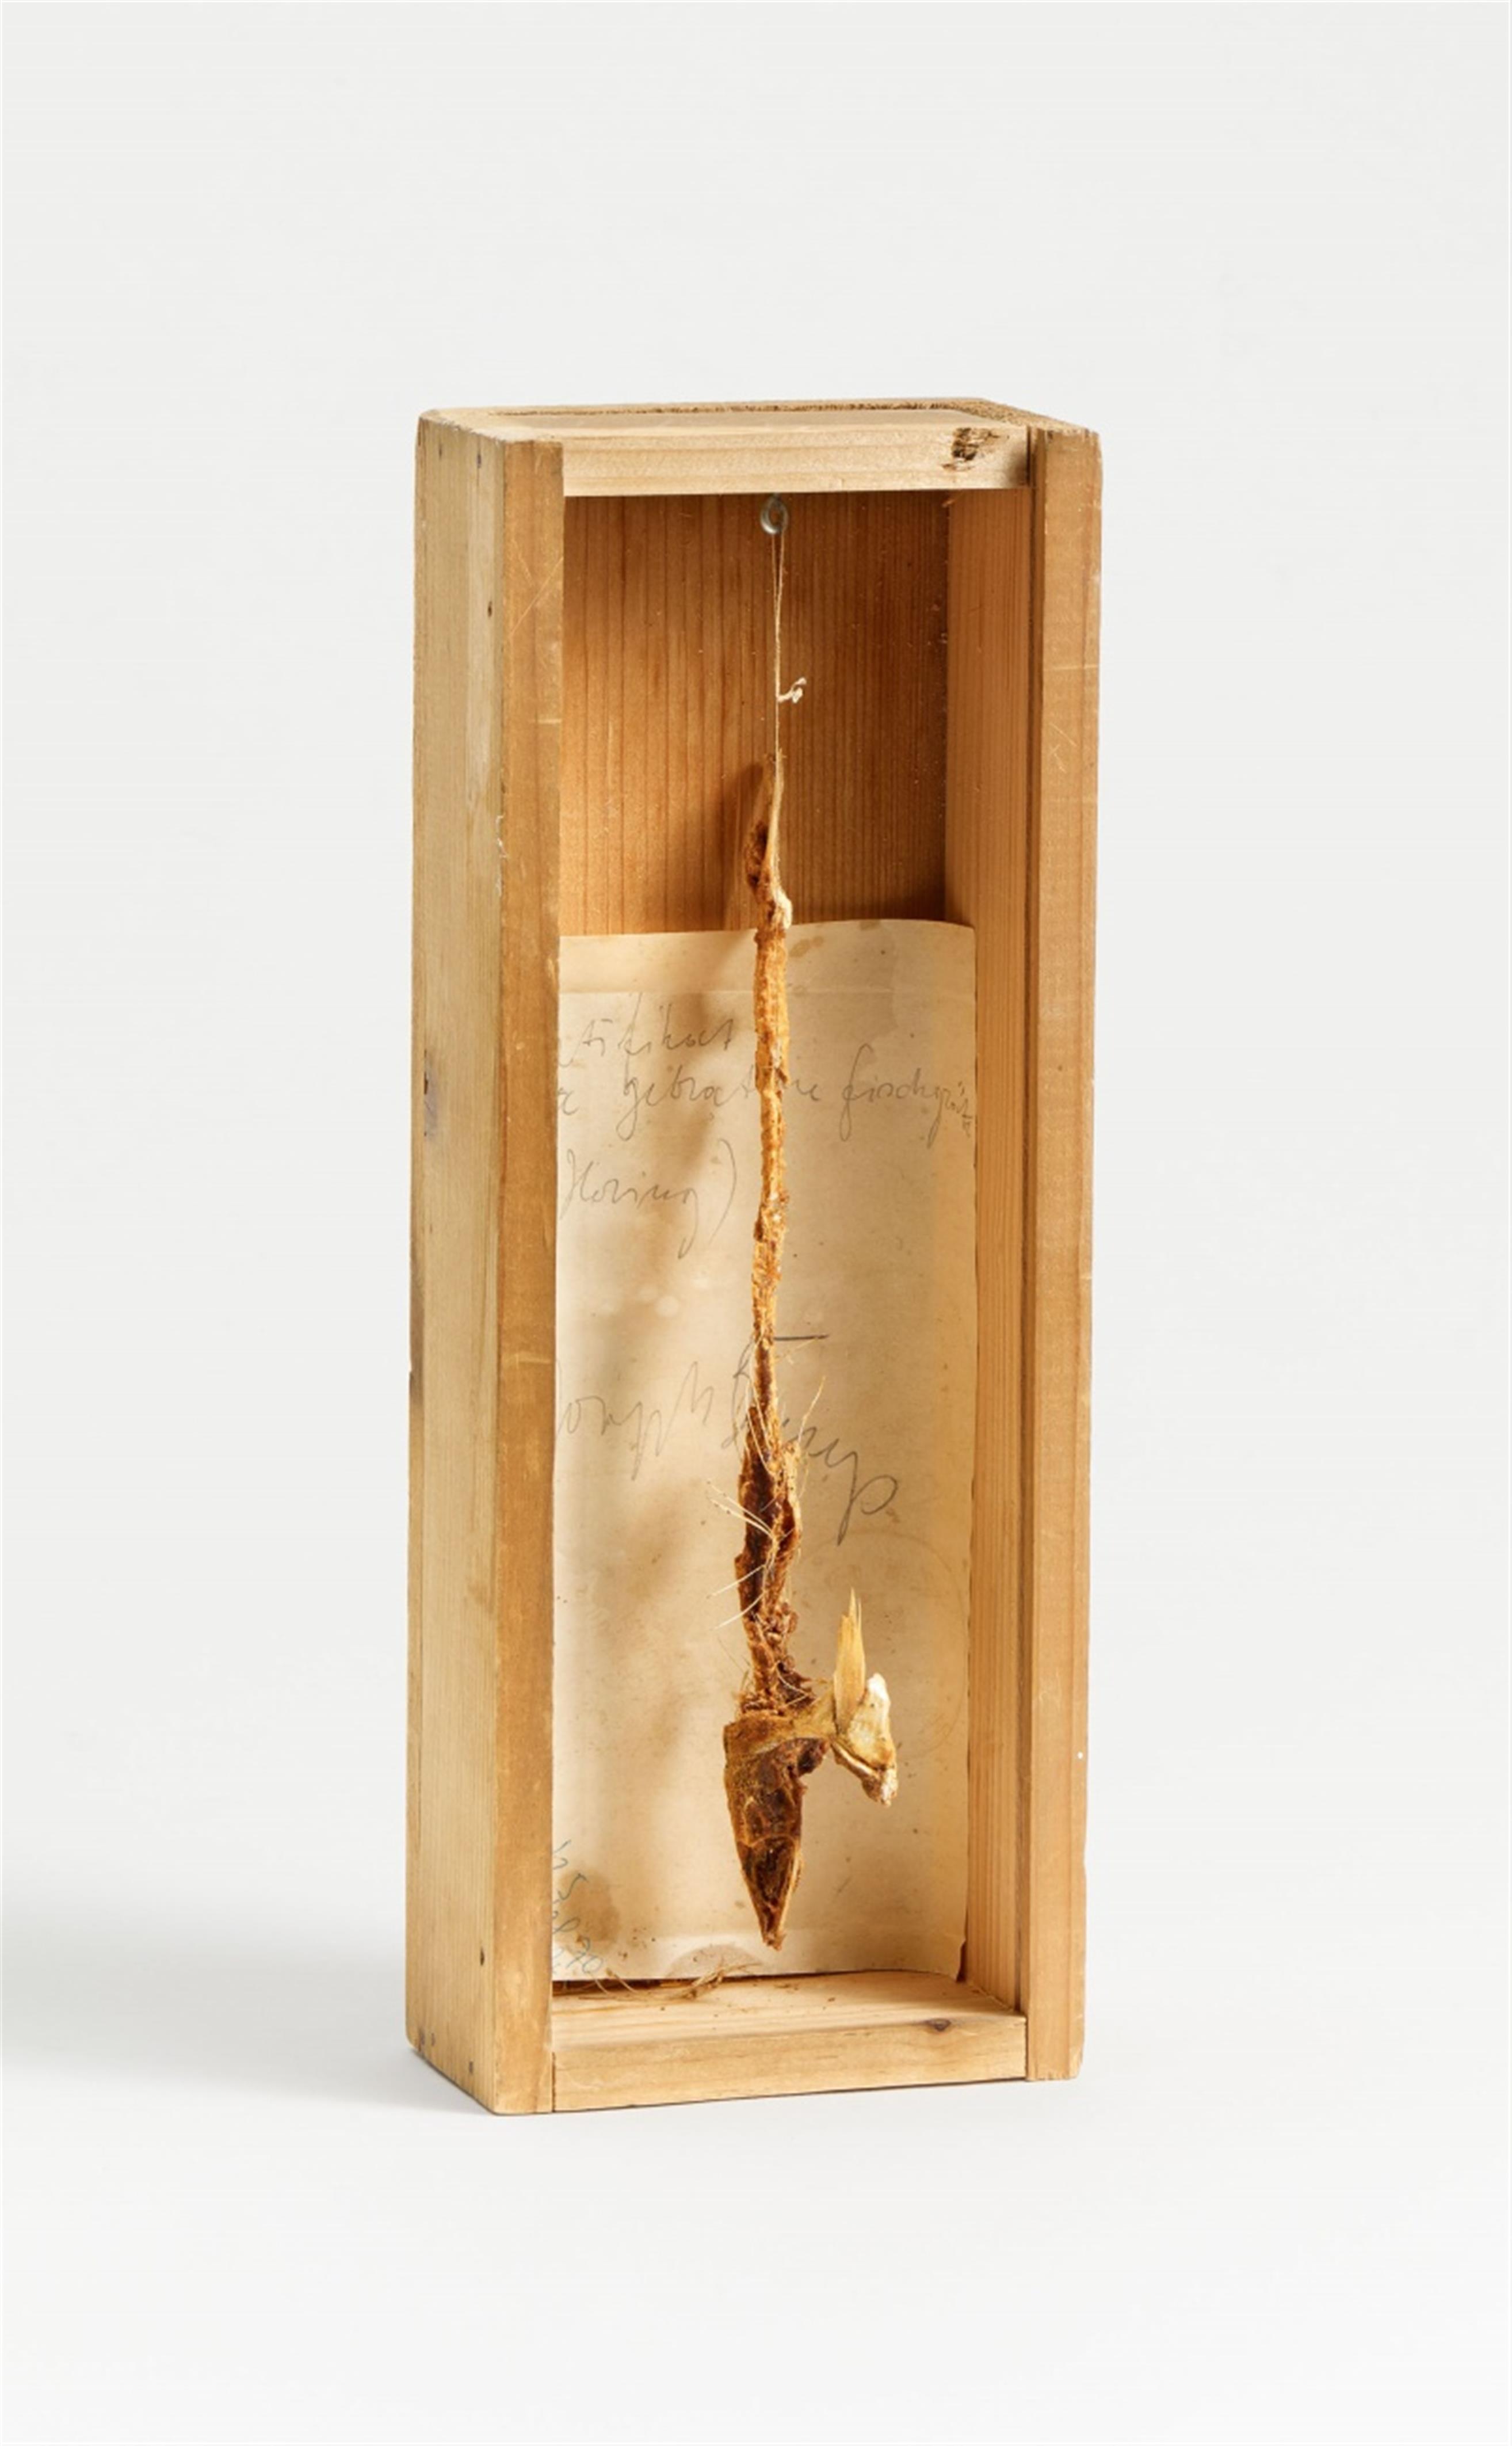 Joseph Beuys - Freitagsobjekt "1a gebratene Fischgräte (Hering)" - image-1